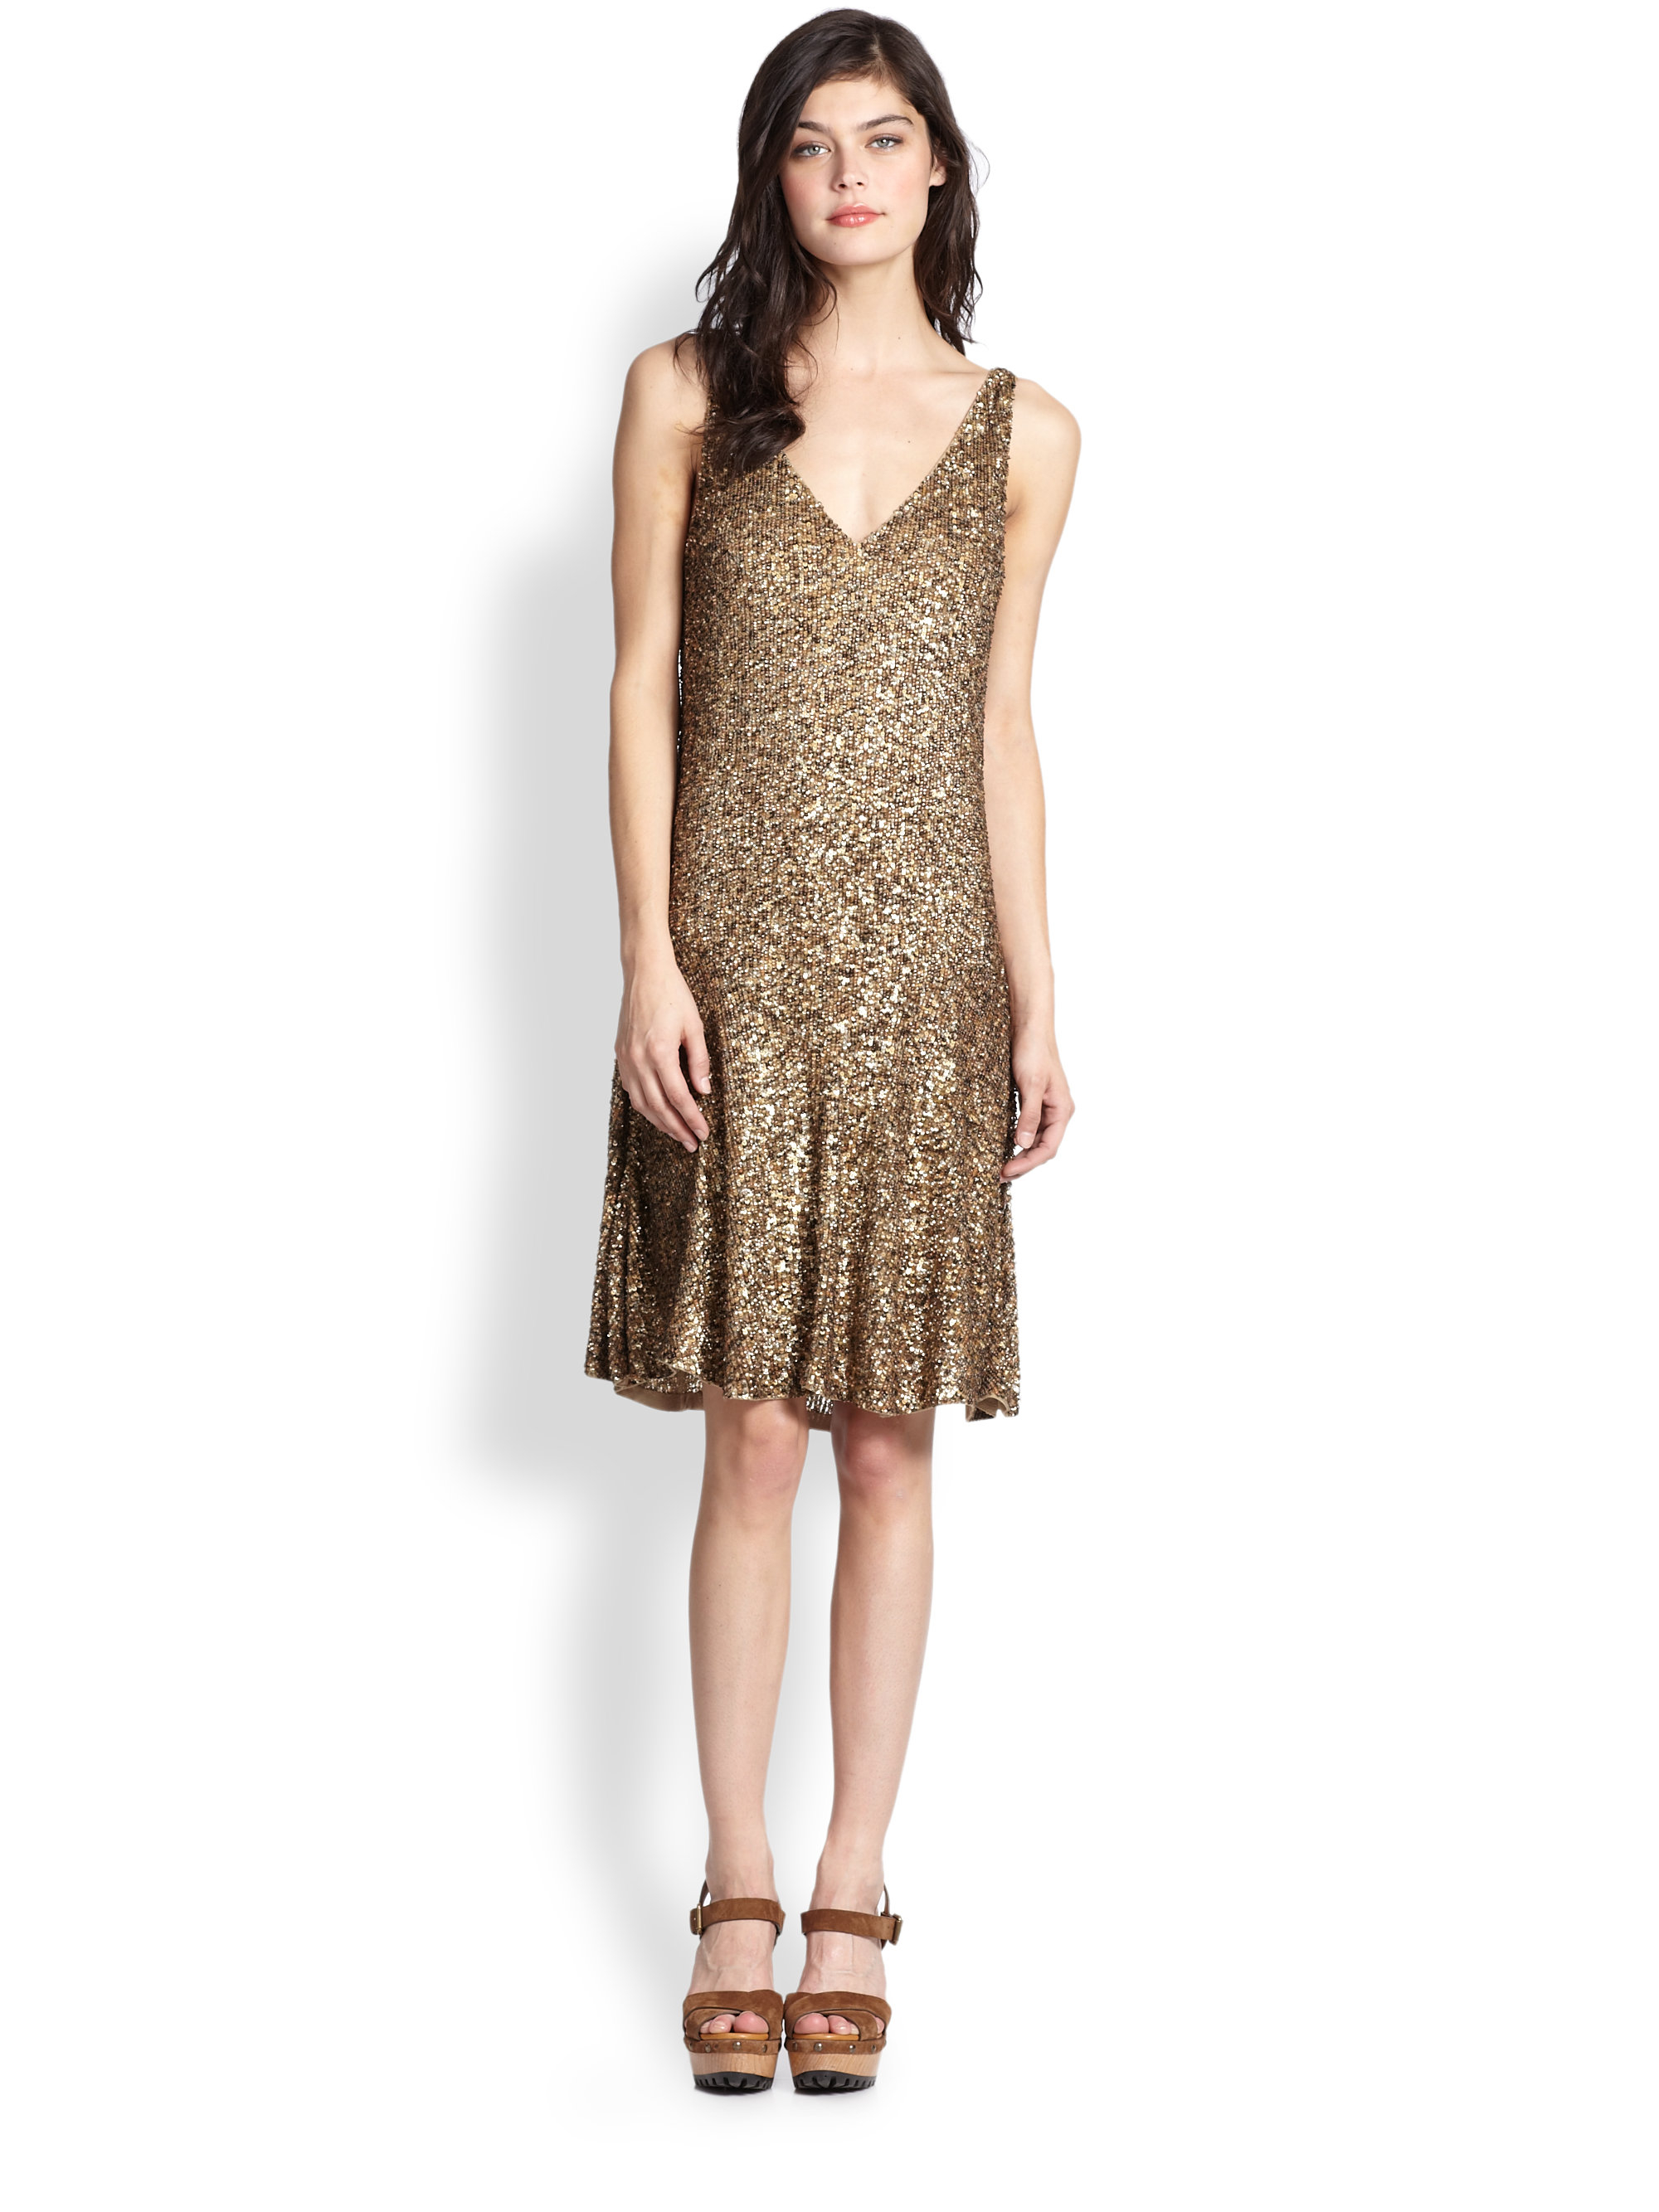 Polo Ralph Lauren Sequined Dress in Gold (Metallic) - Lyst